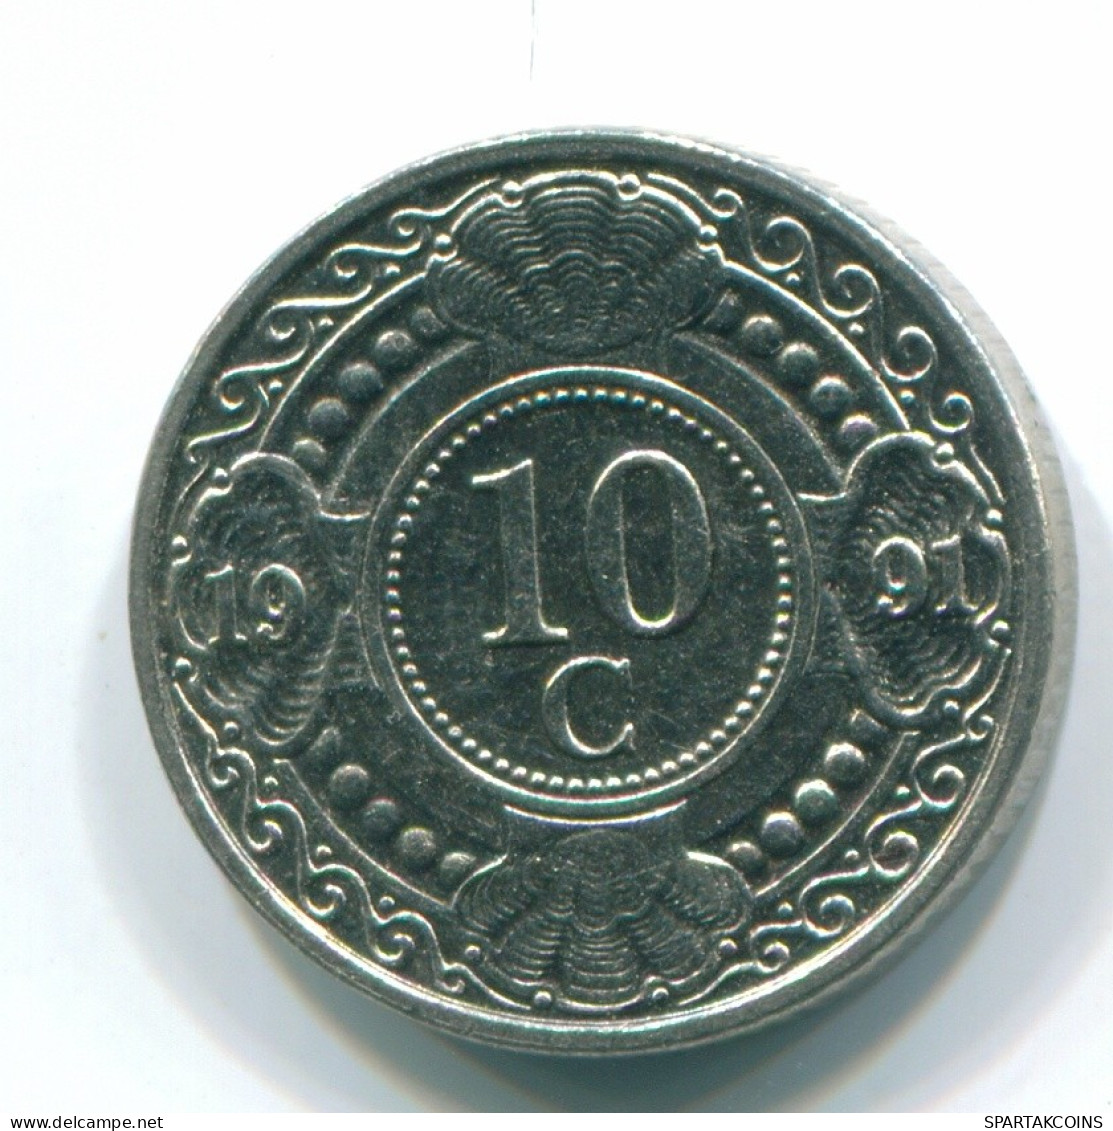 10 CENTS 1991 NIEDERLÄNDISCHE ANTILLEN Nickel Koloniale Münze #S11329.D.A - Antilles Néerlandaises